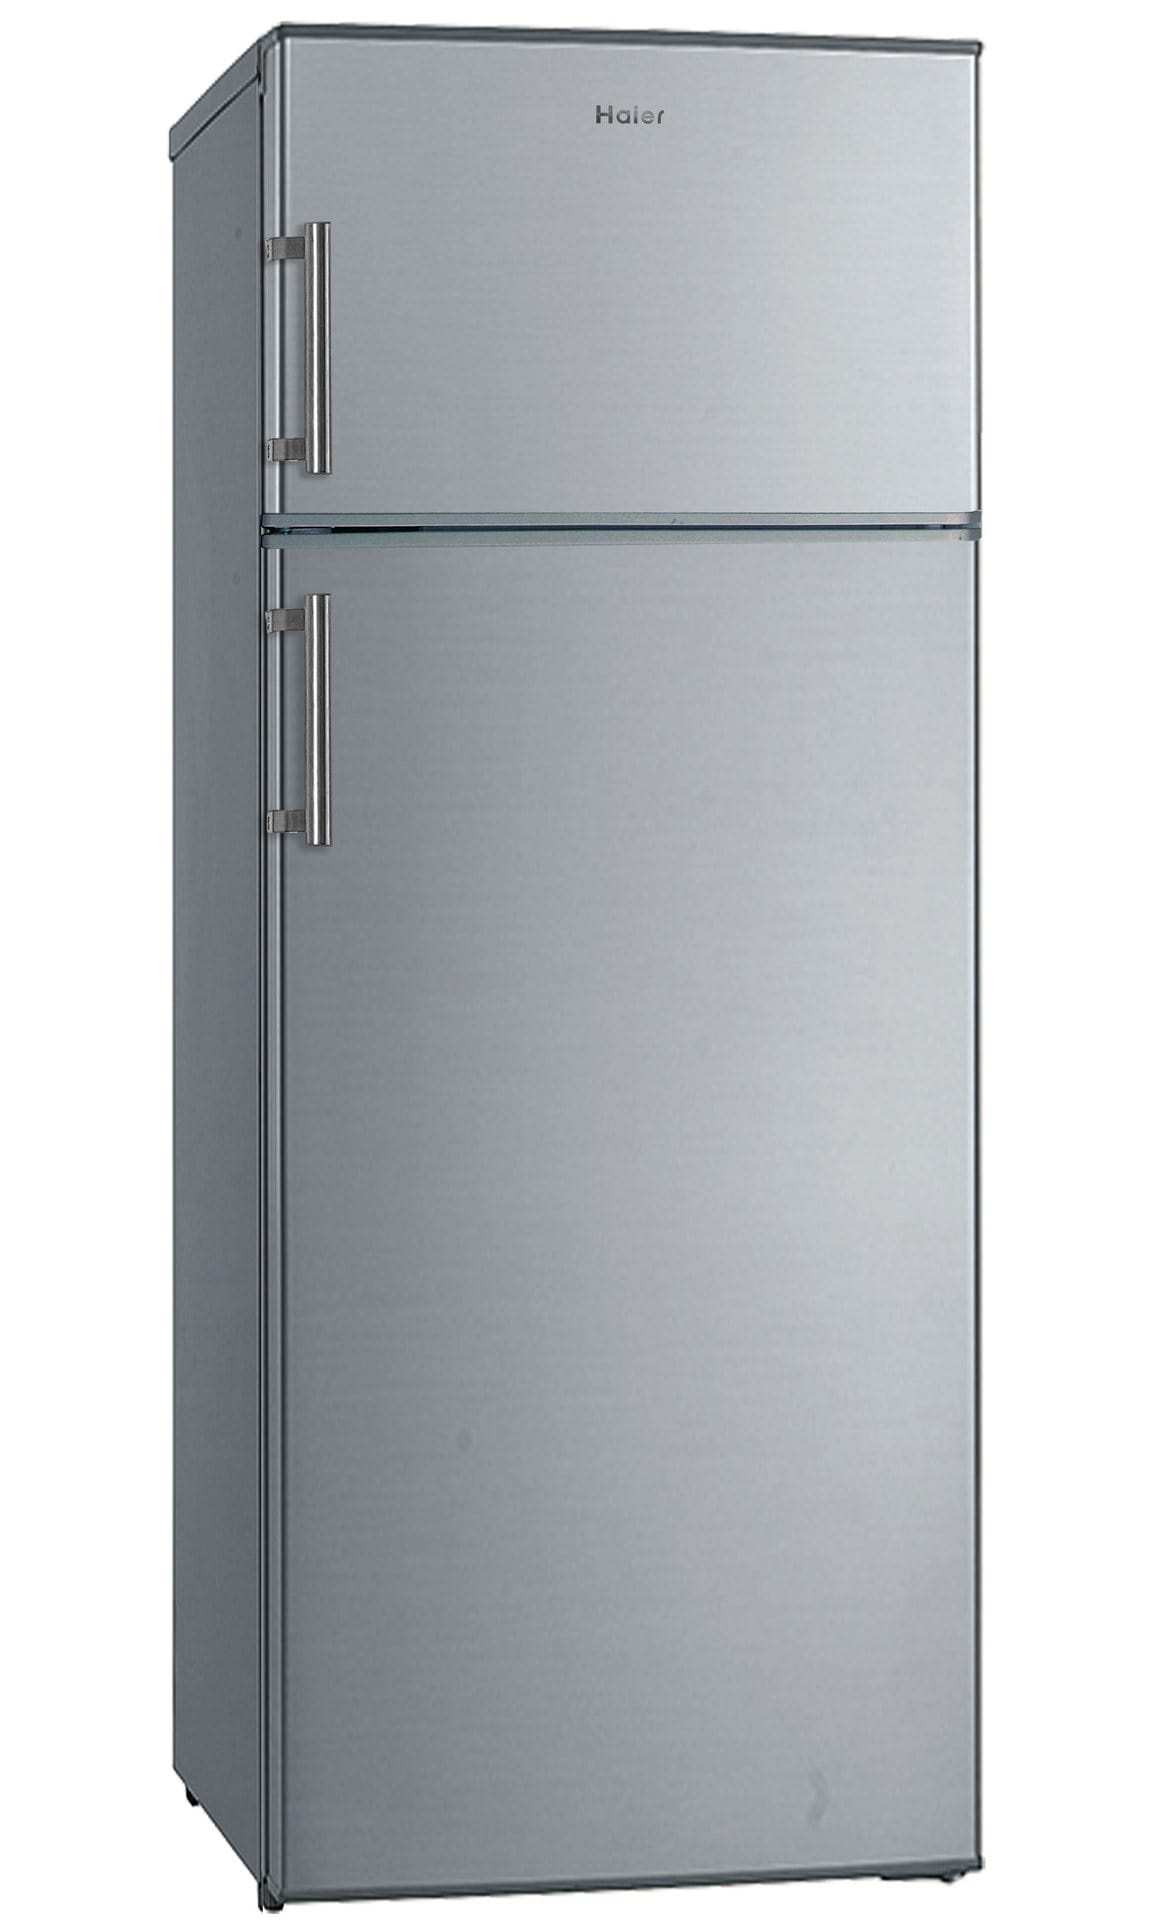 HTM546S - Pas cher frigo 2 portes silver Haier